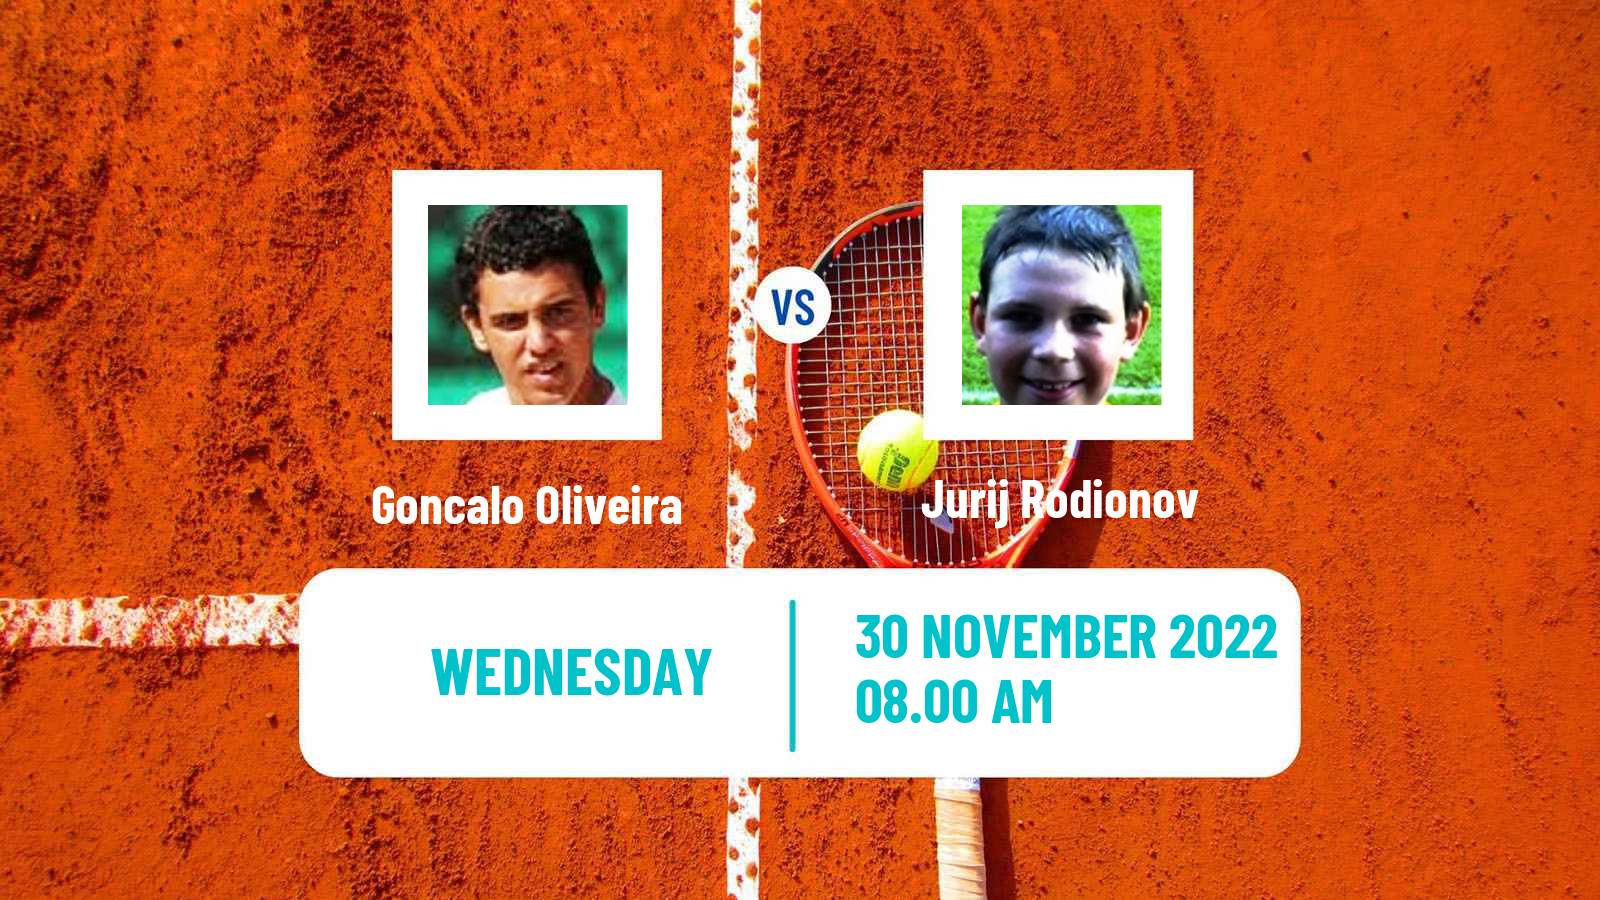 Tennis ATP Challenger Goncalo Oliveira - Jurij Rodionov